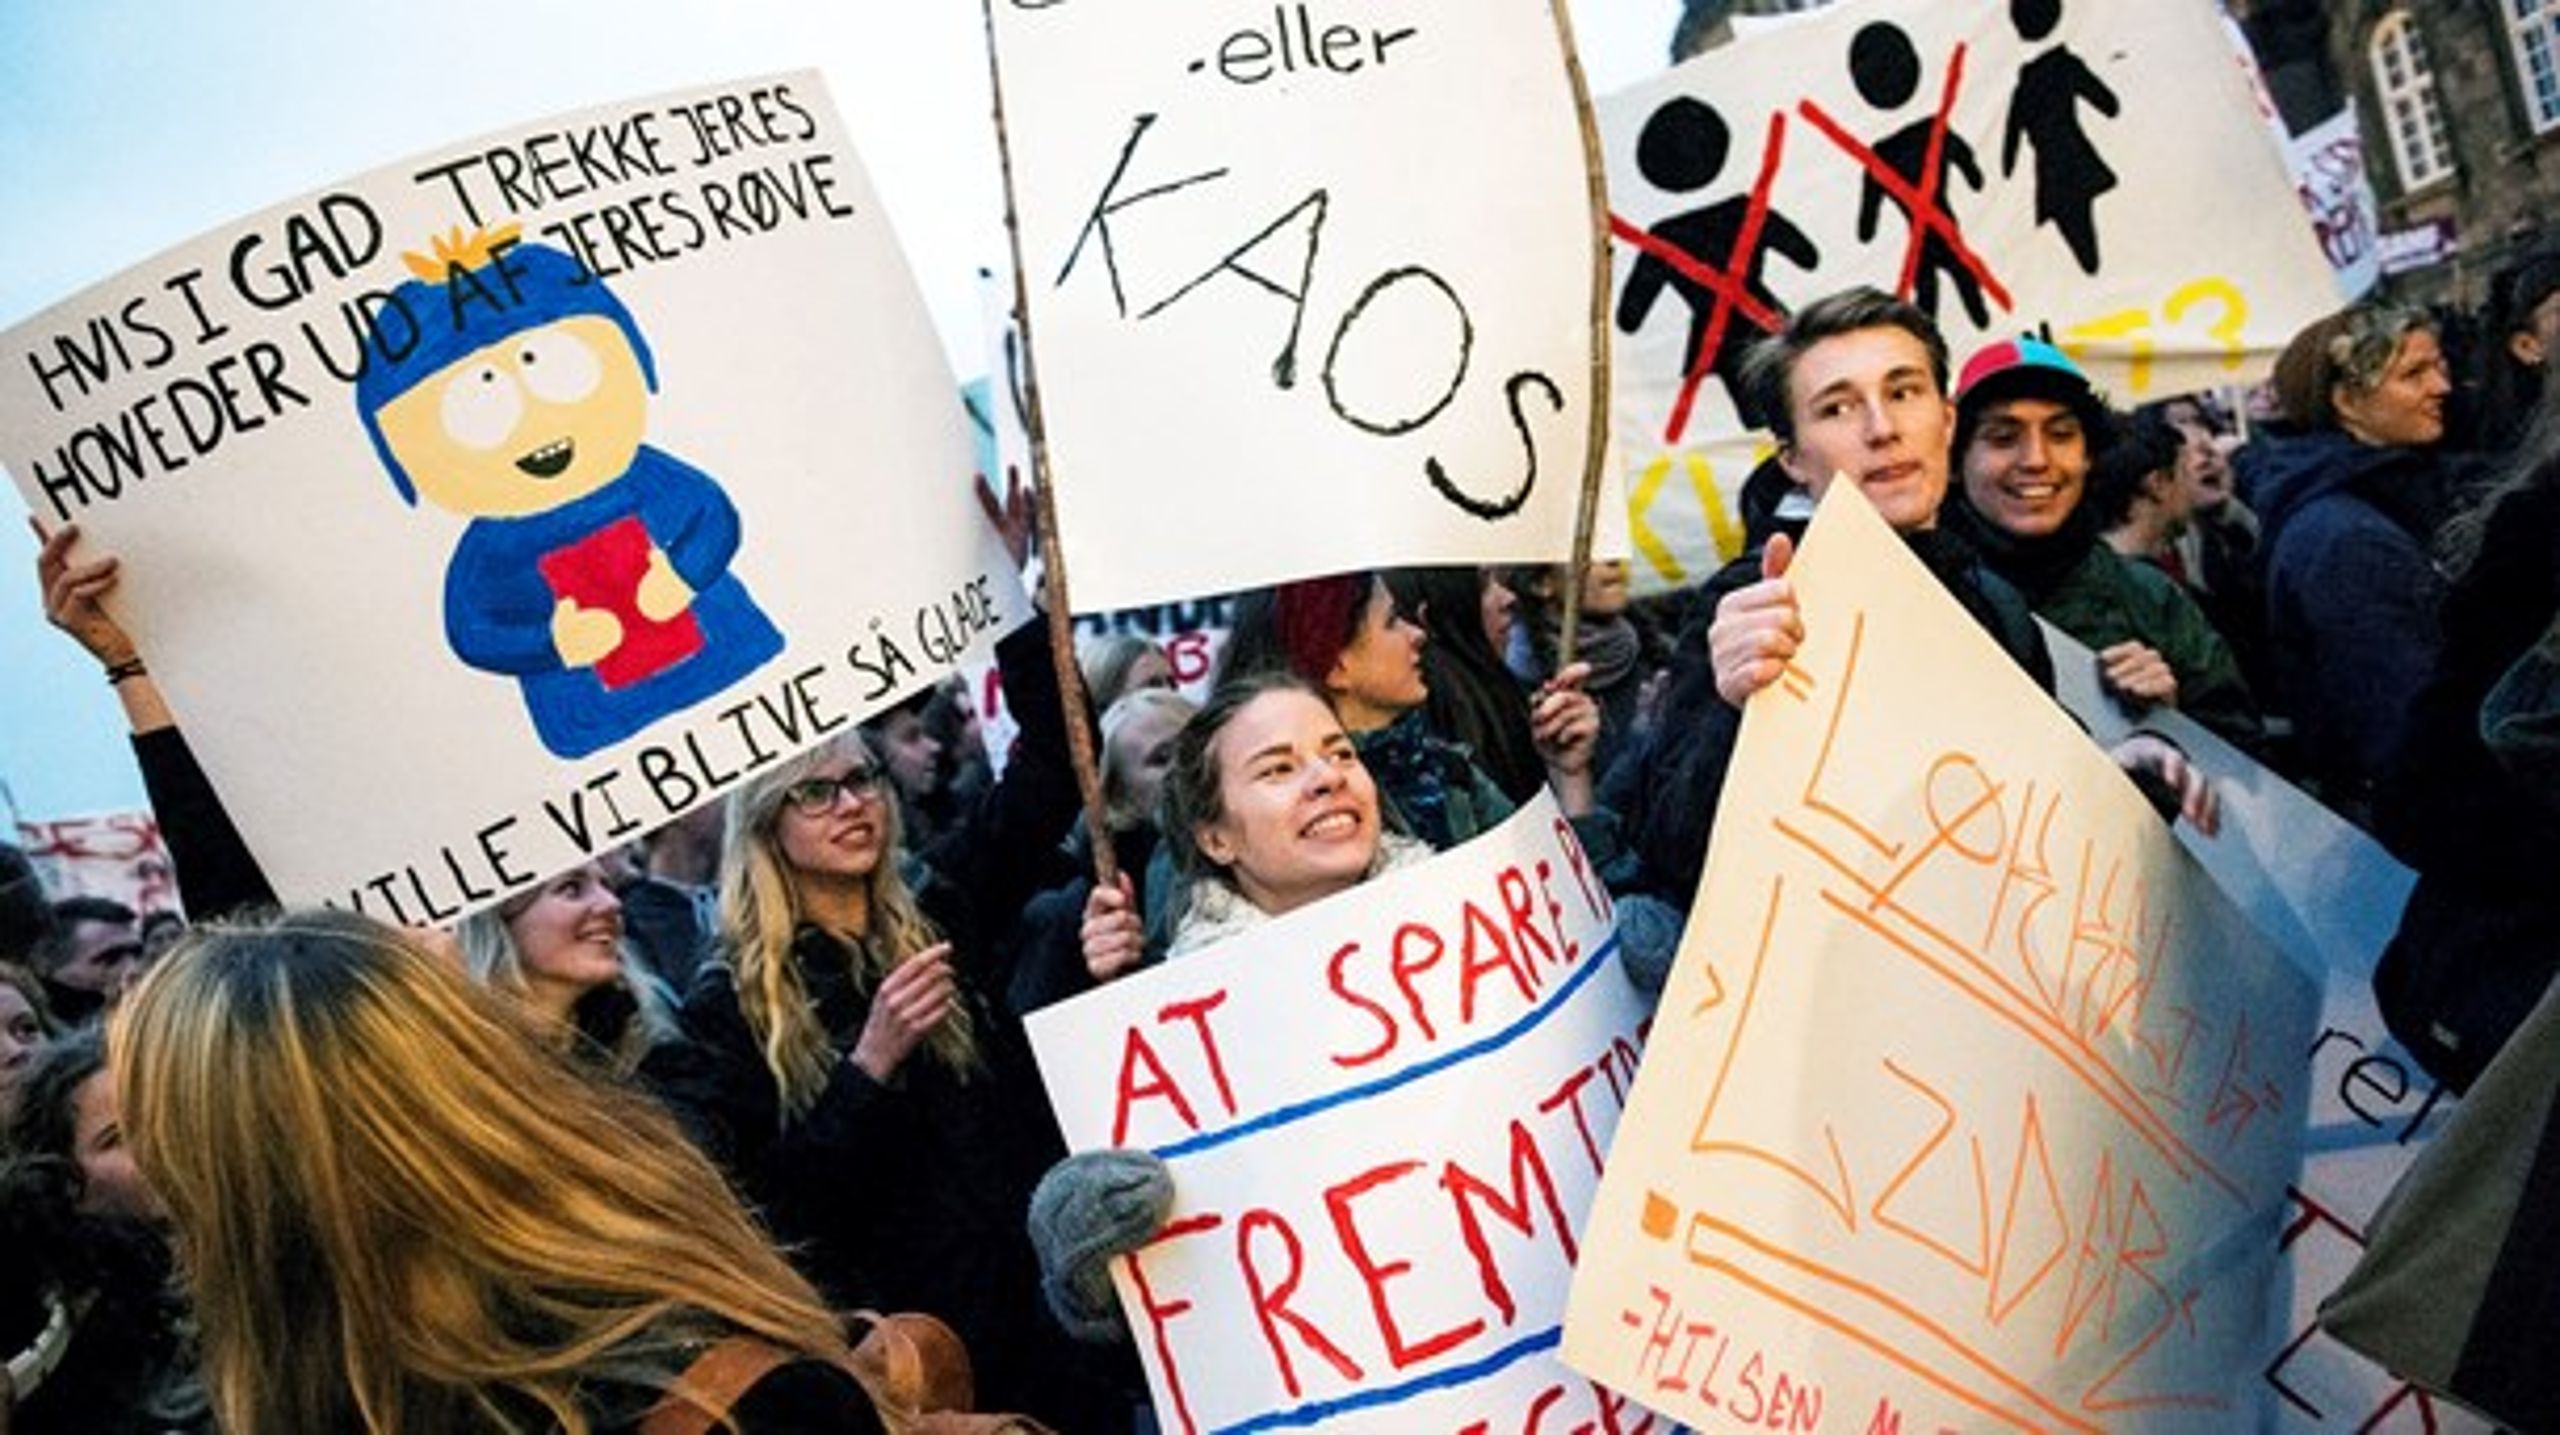 Studerende demonstrerer imod regeringens nedskæringer på uddannelse torsdag d. 29 oktober 2015 i København.&nbsp;(Arkivfoto)